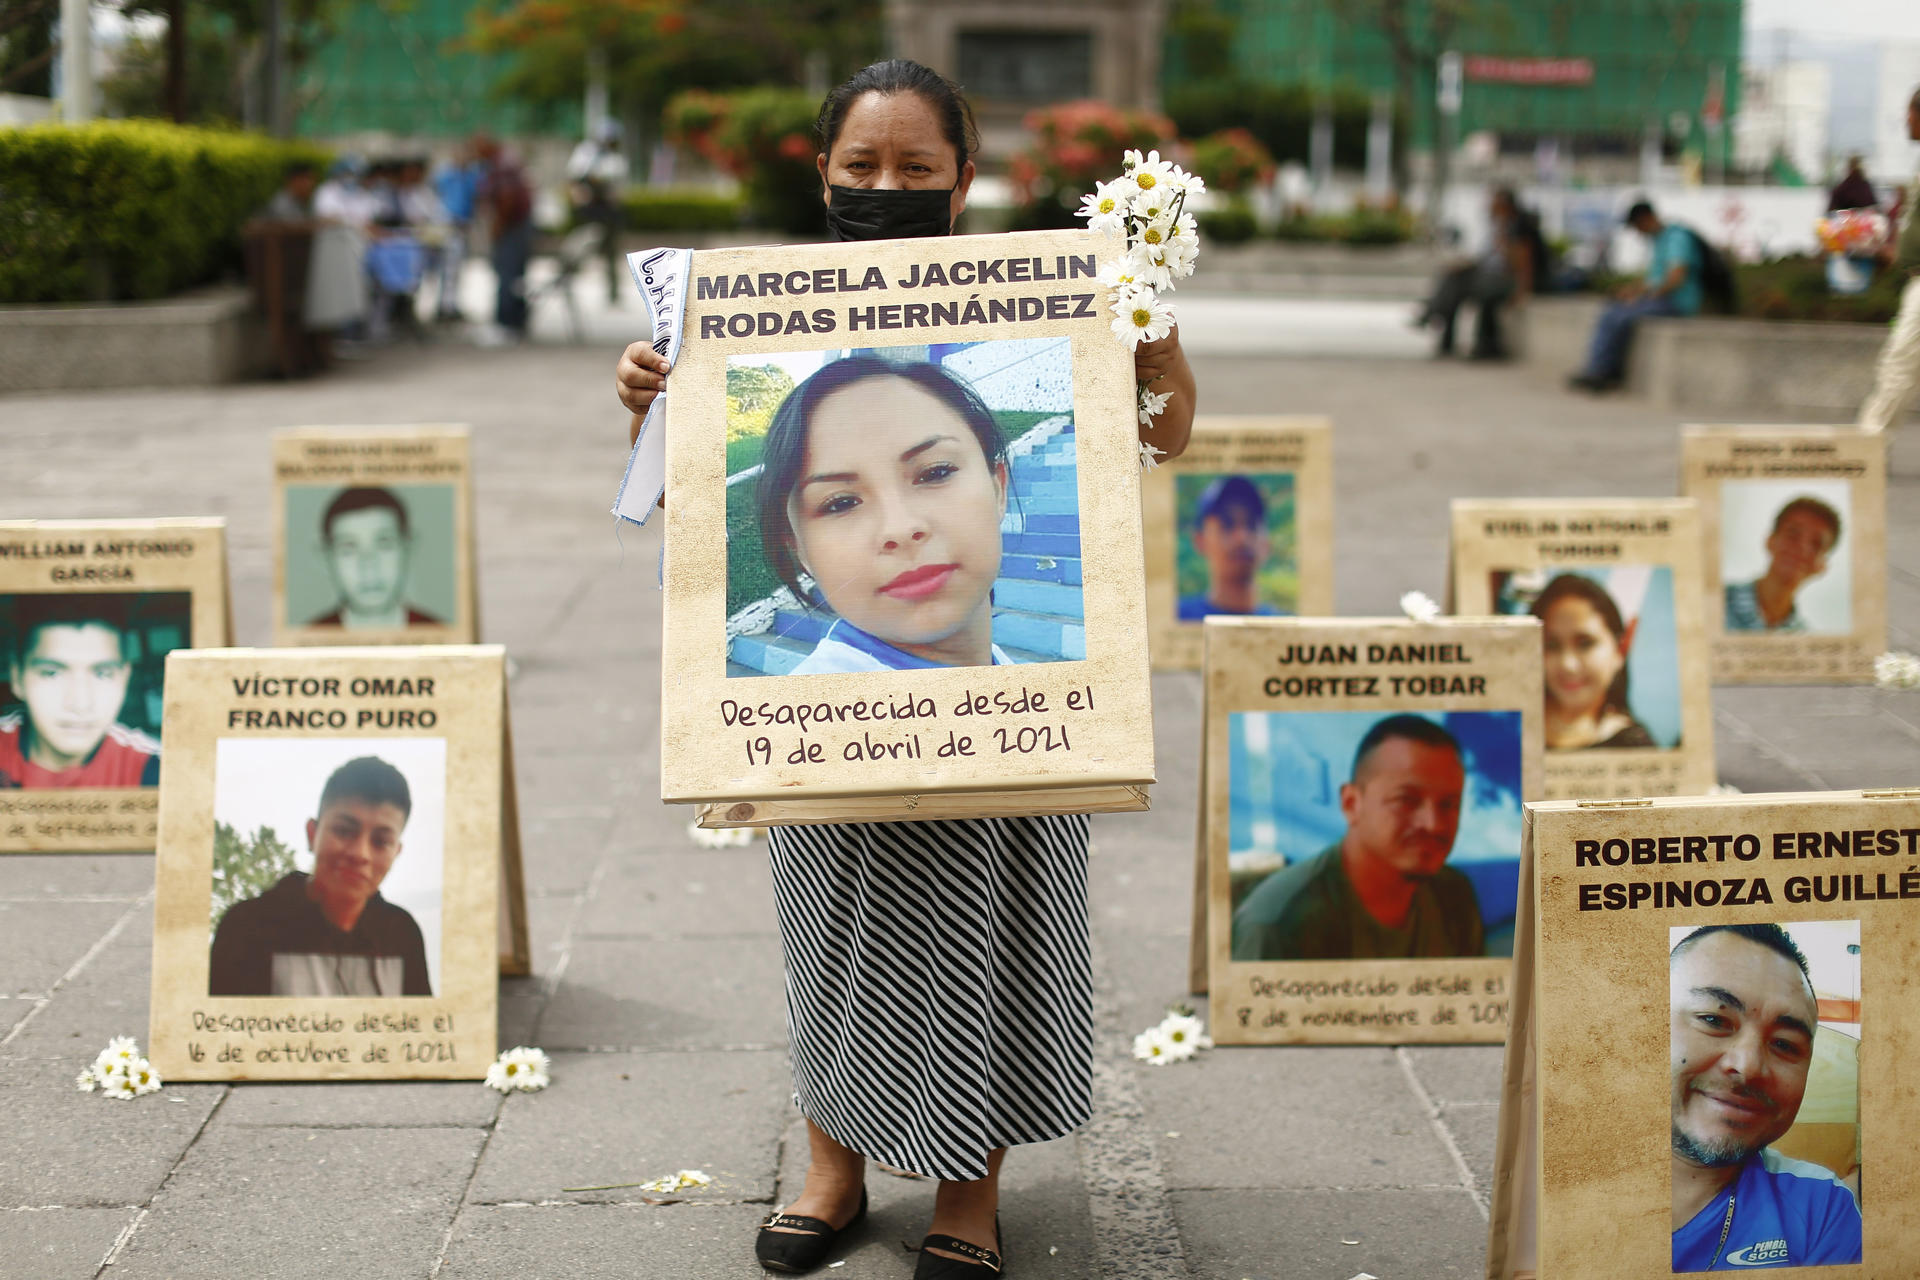 Varias fotografías de personas desaparecidas son exhibidas durante una acción para exhortar a las autoridades de Justicia del país a aclarar los casos denunciados, hoy, en la Plaza Gerardo Barrios en San Salvador (El Salvador). EFE/Rodrigo Sura